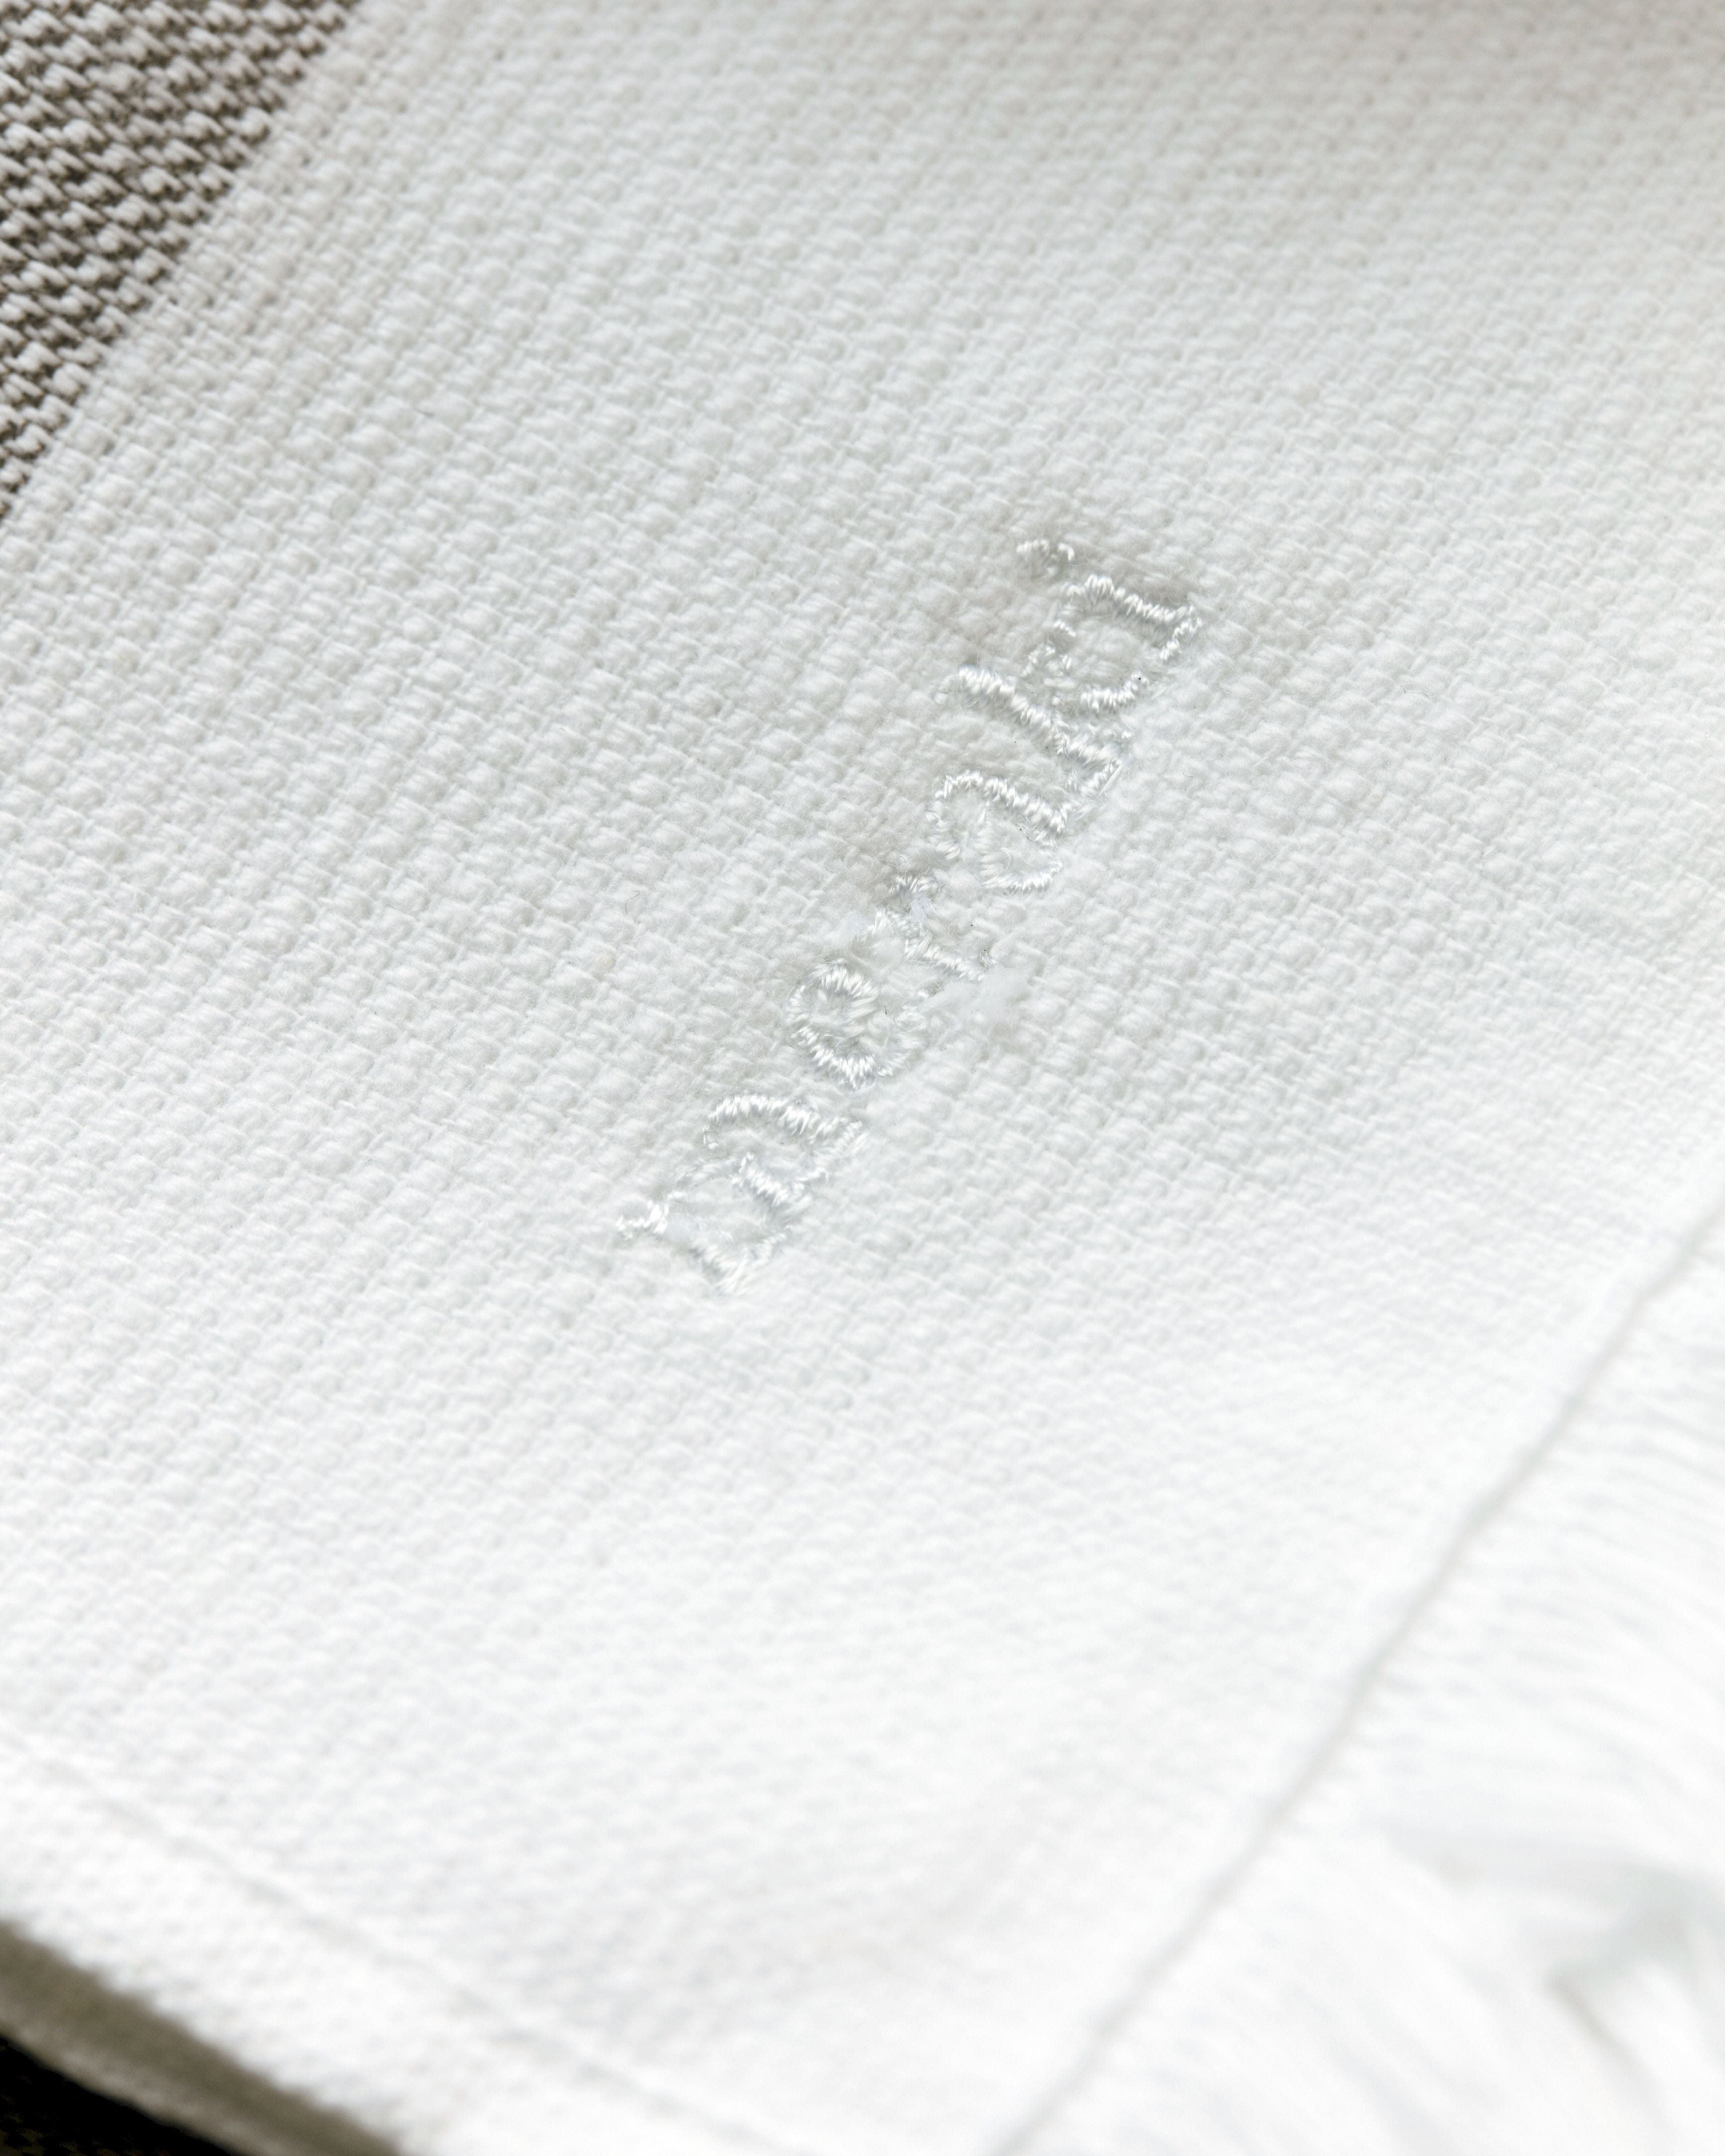 Meraki Barbarum handdoek set van 20x100 cm, witte en bruine strepen